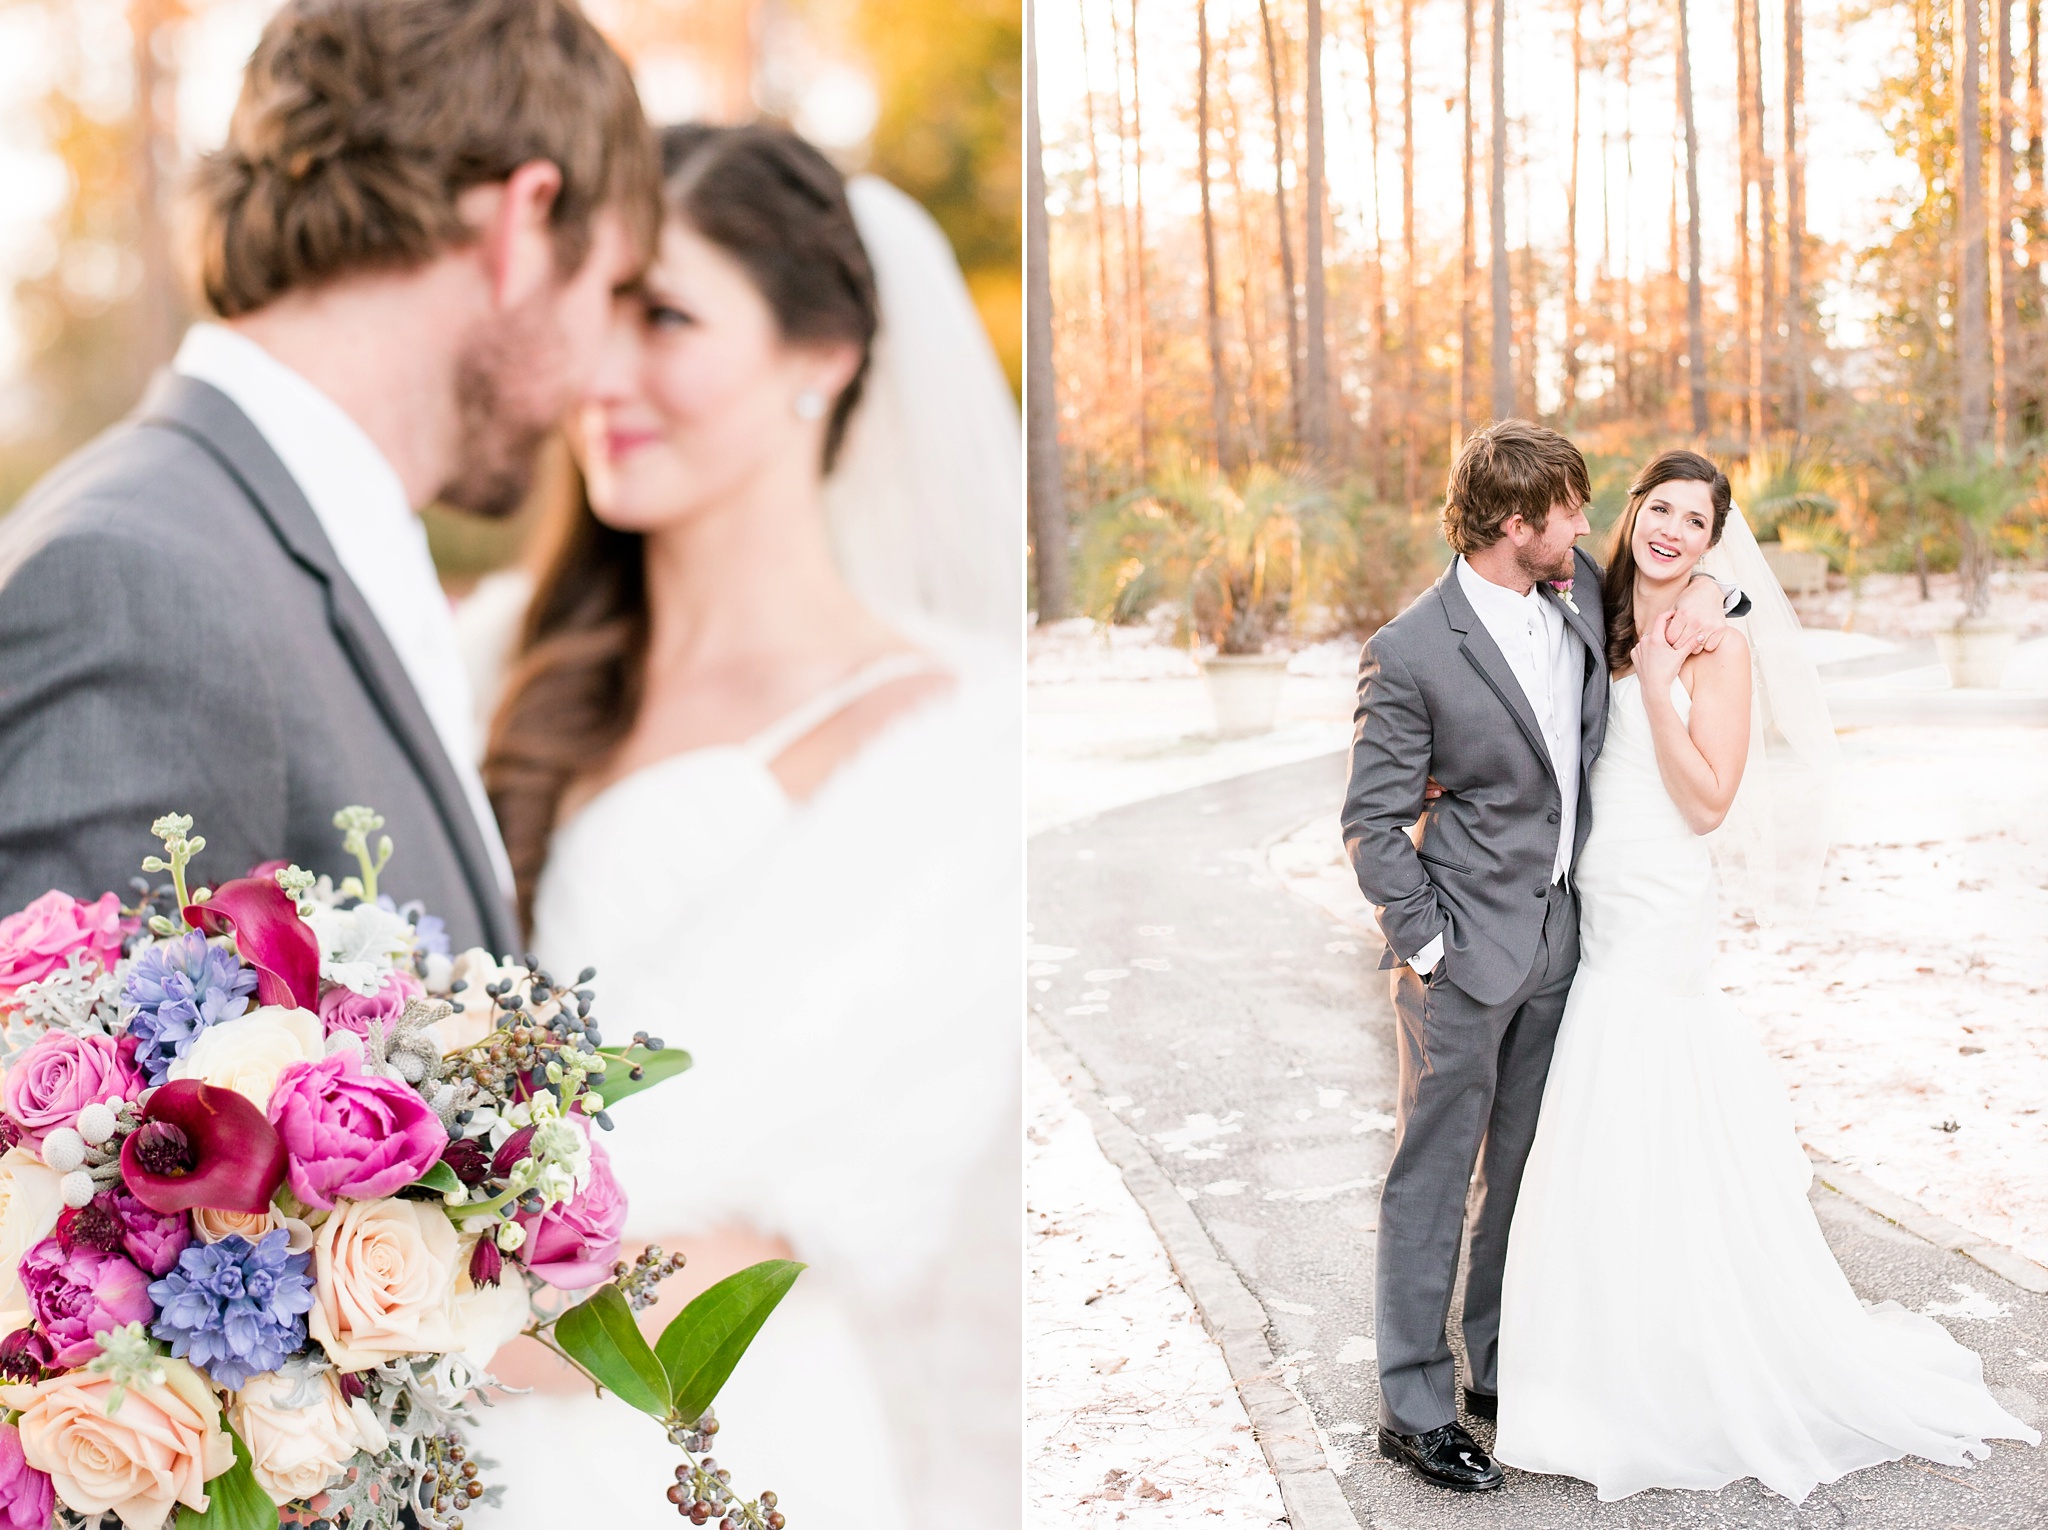 Snowy Winter Aldridge Gardens Wedding | Birmingham Alabama Wedding Photographers_0046.jpg